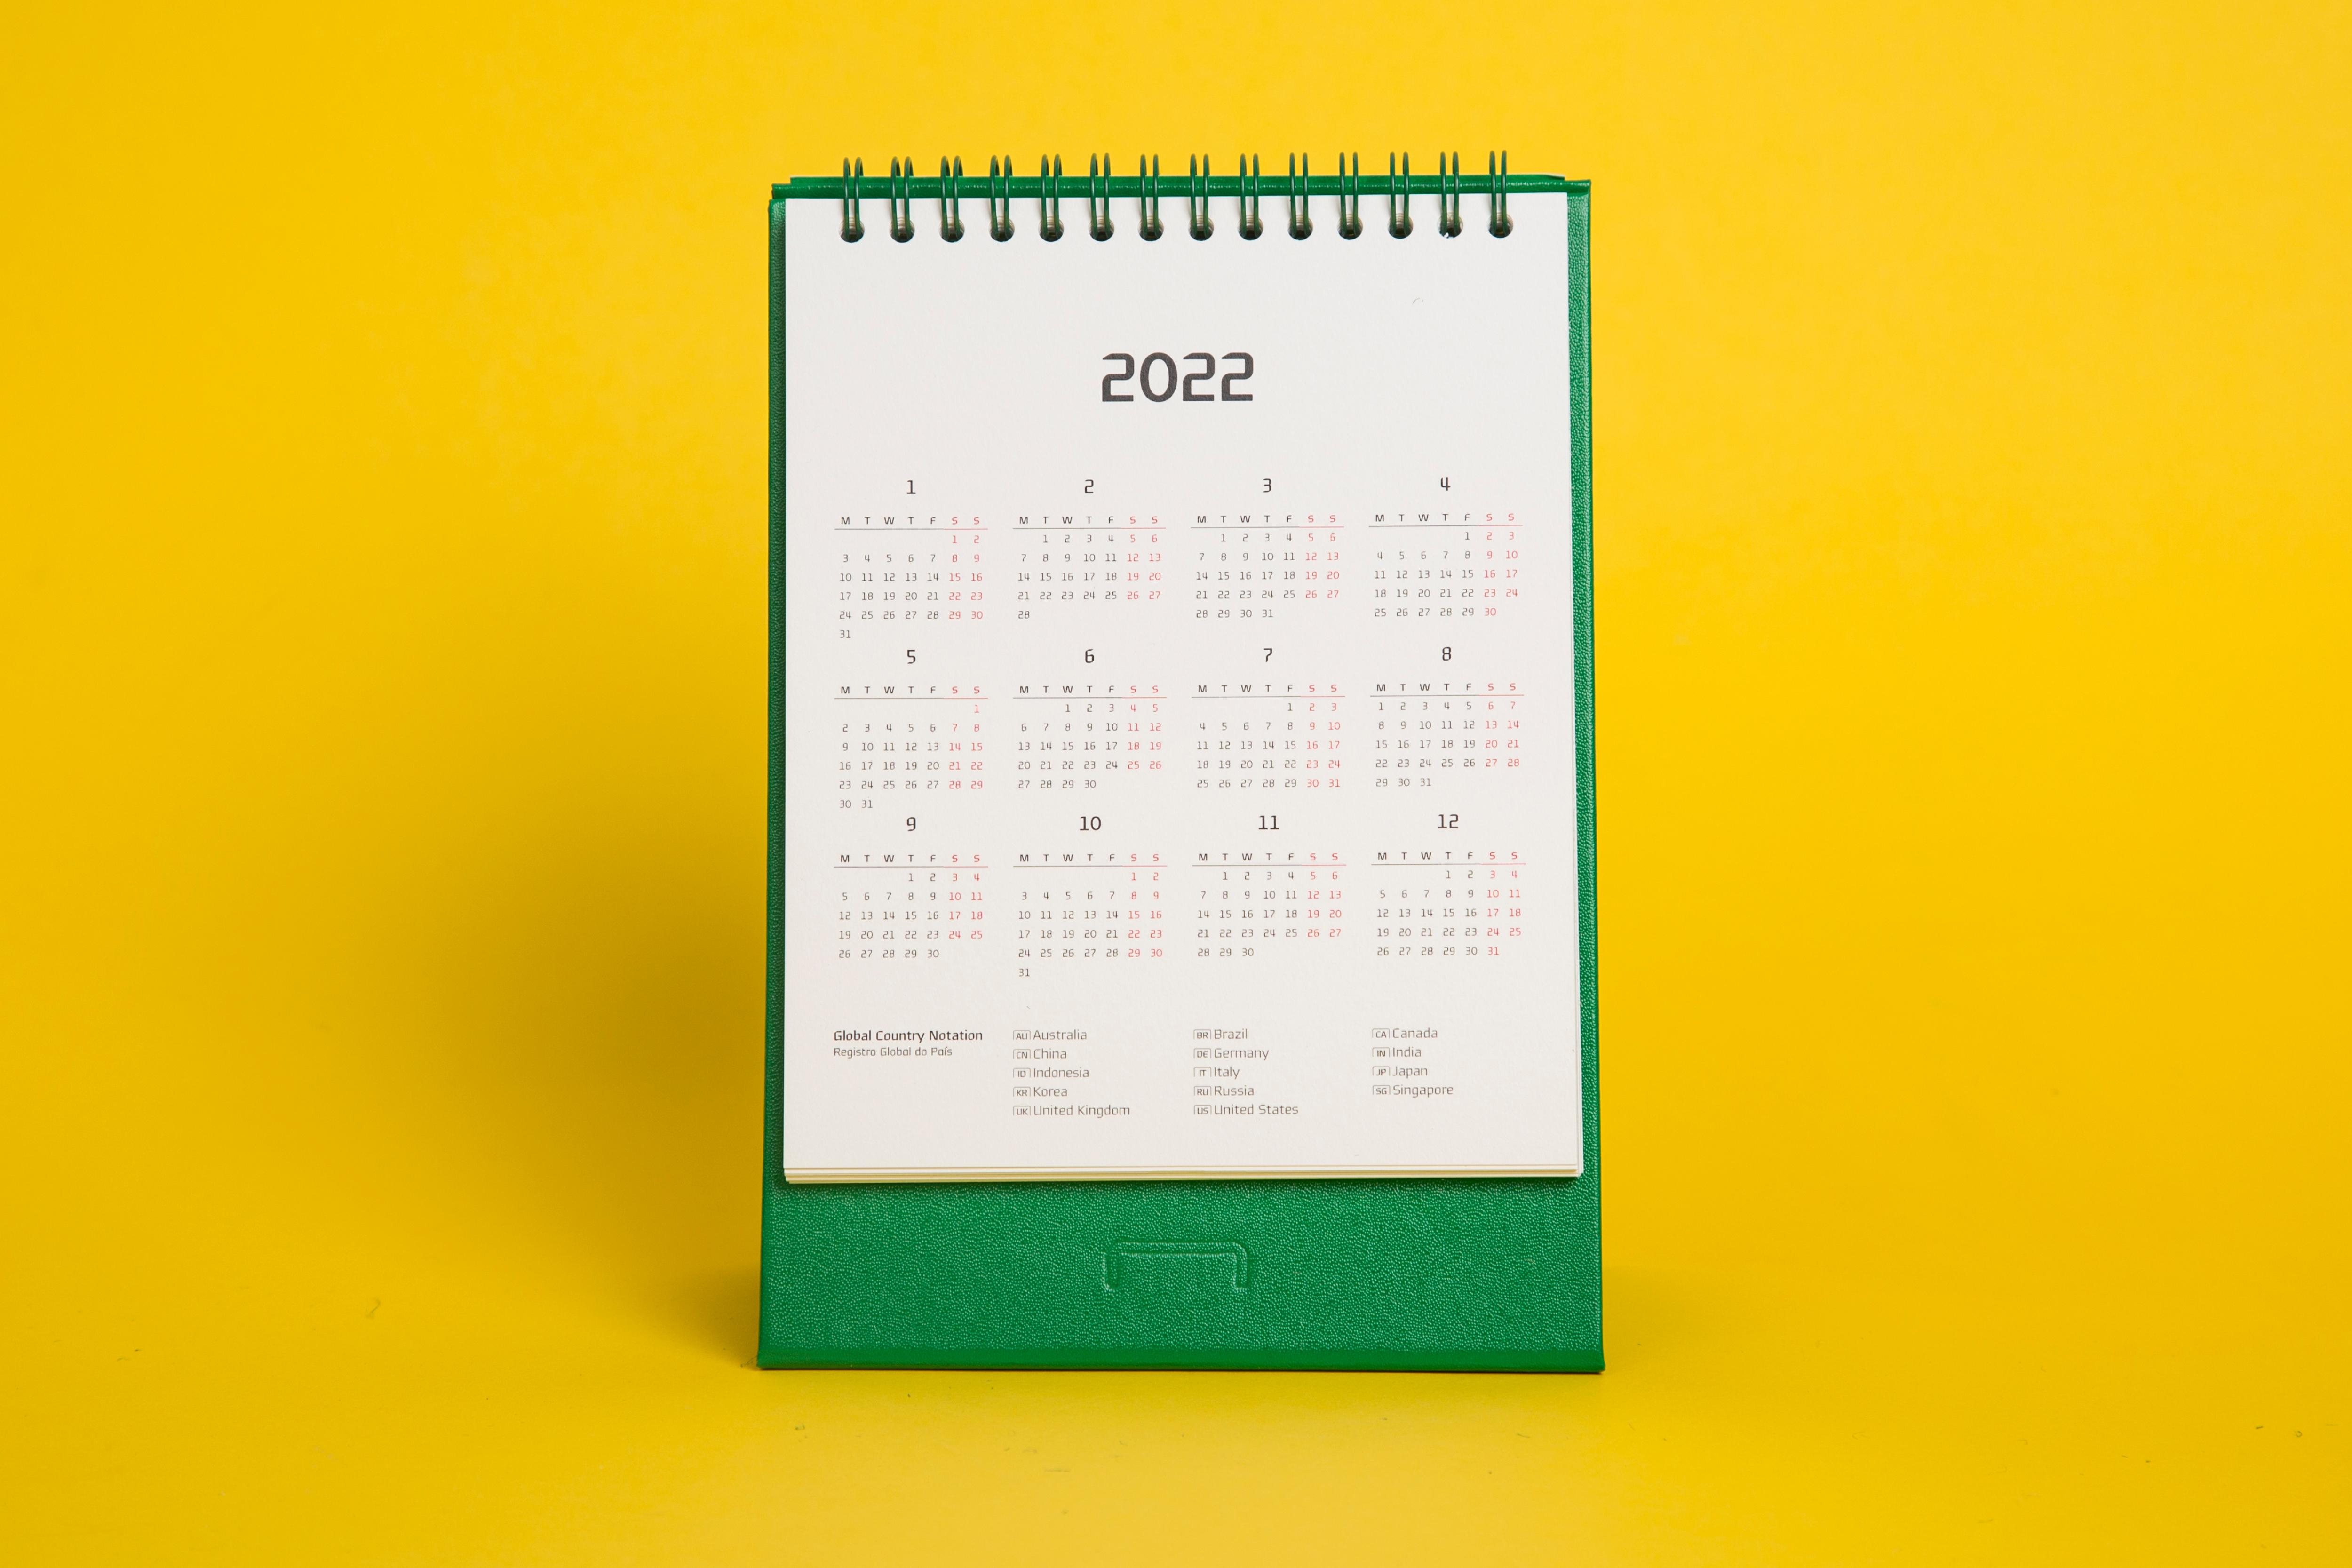 Hcc 2022 Calendar Hyundai Card Calendar & Planner 2022 - Vadesign2